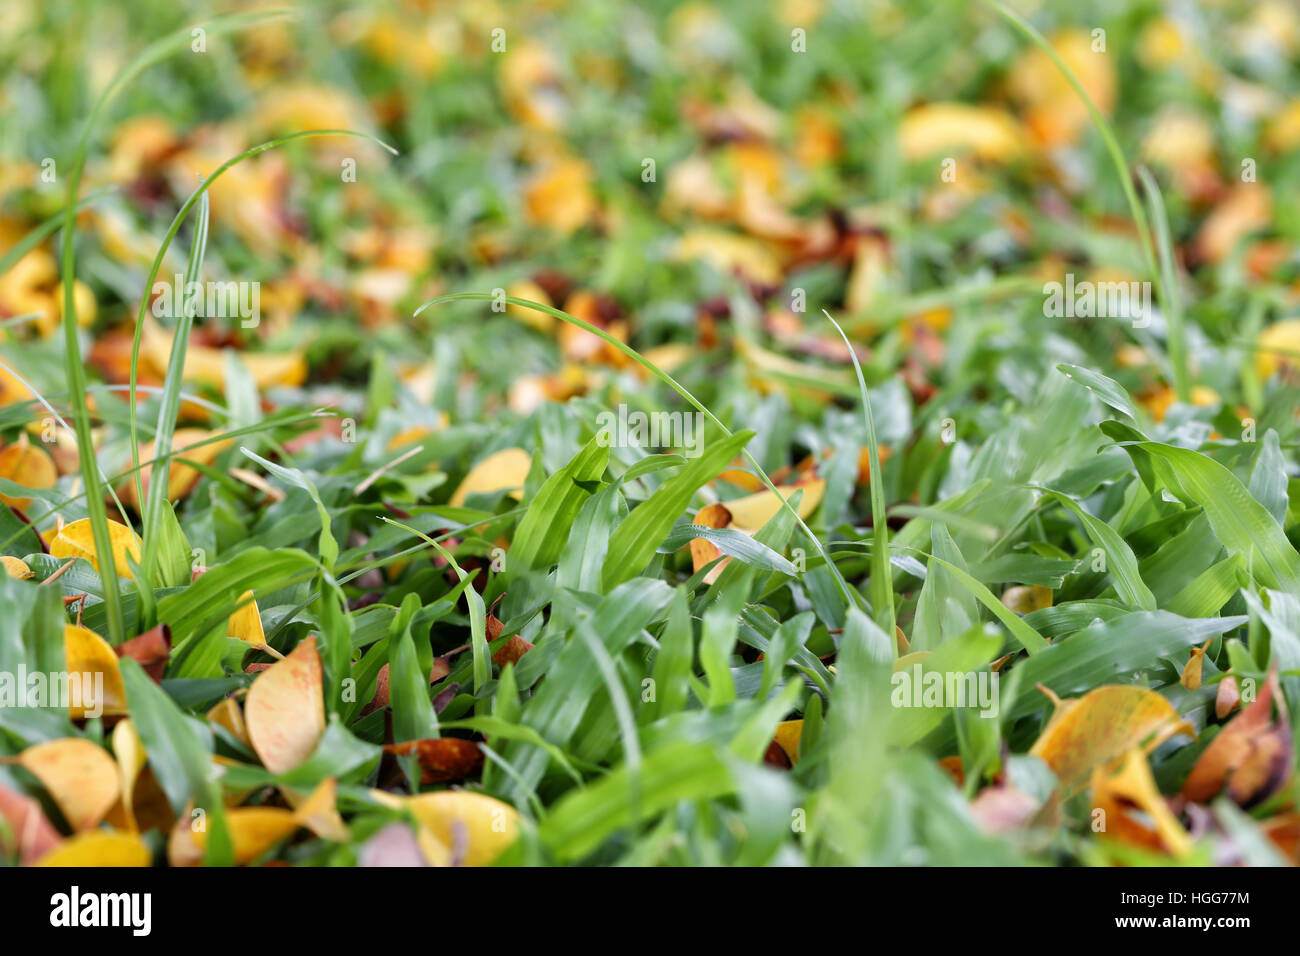 Fresco verde erba nel parco pubblico con foglia secca nella stagione primaverile. Foto Stock